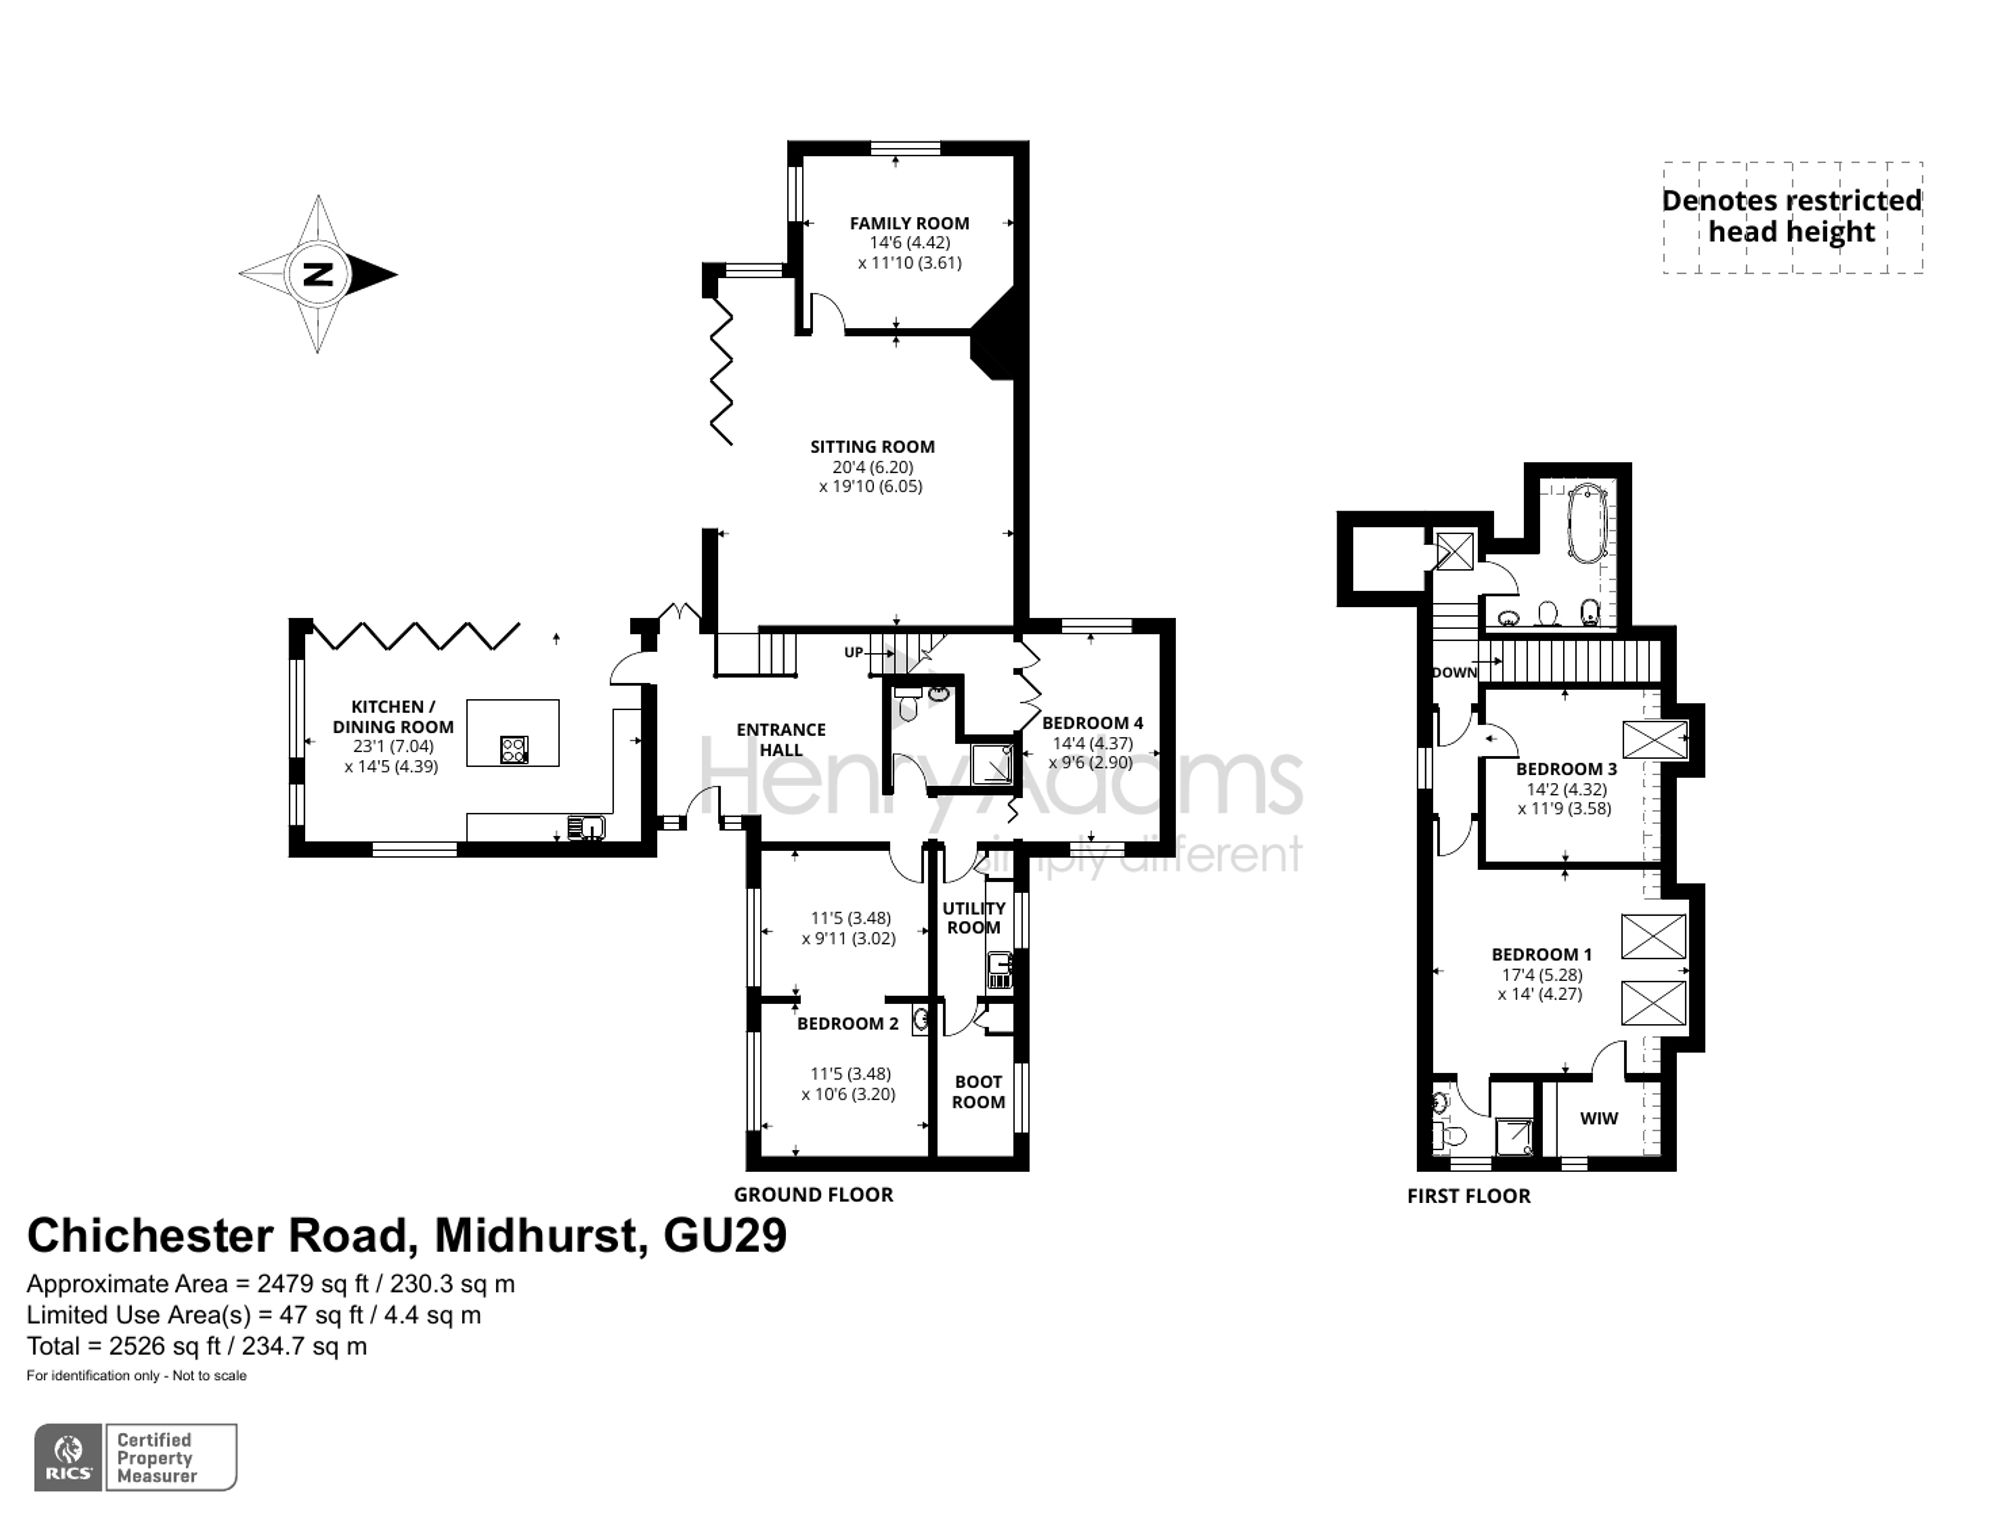 Chichester Road, Midhurst, GU29 floorplans